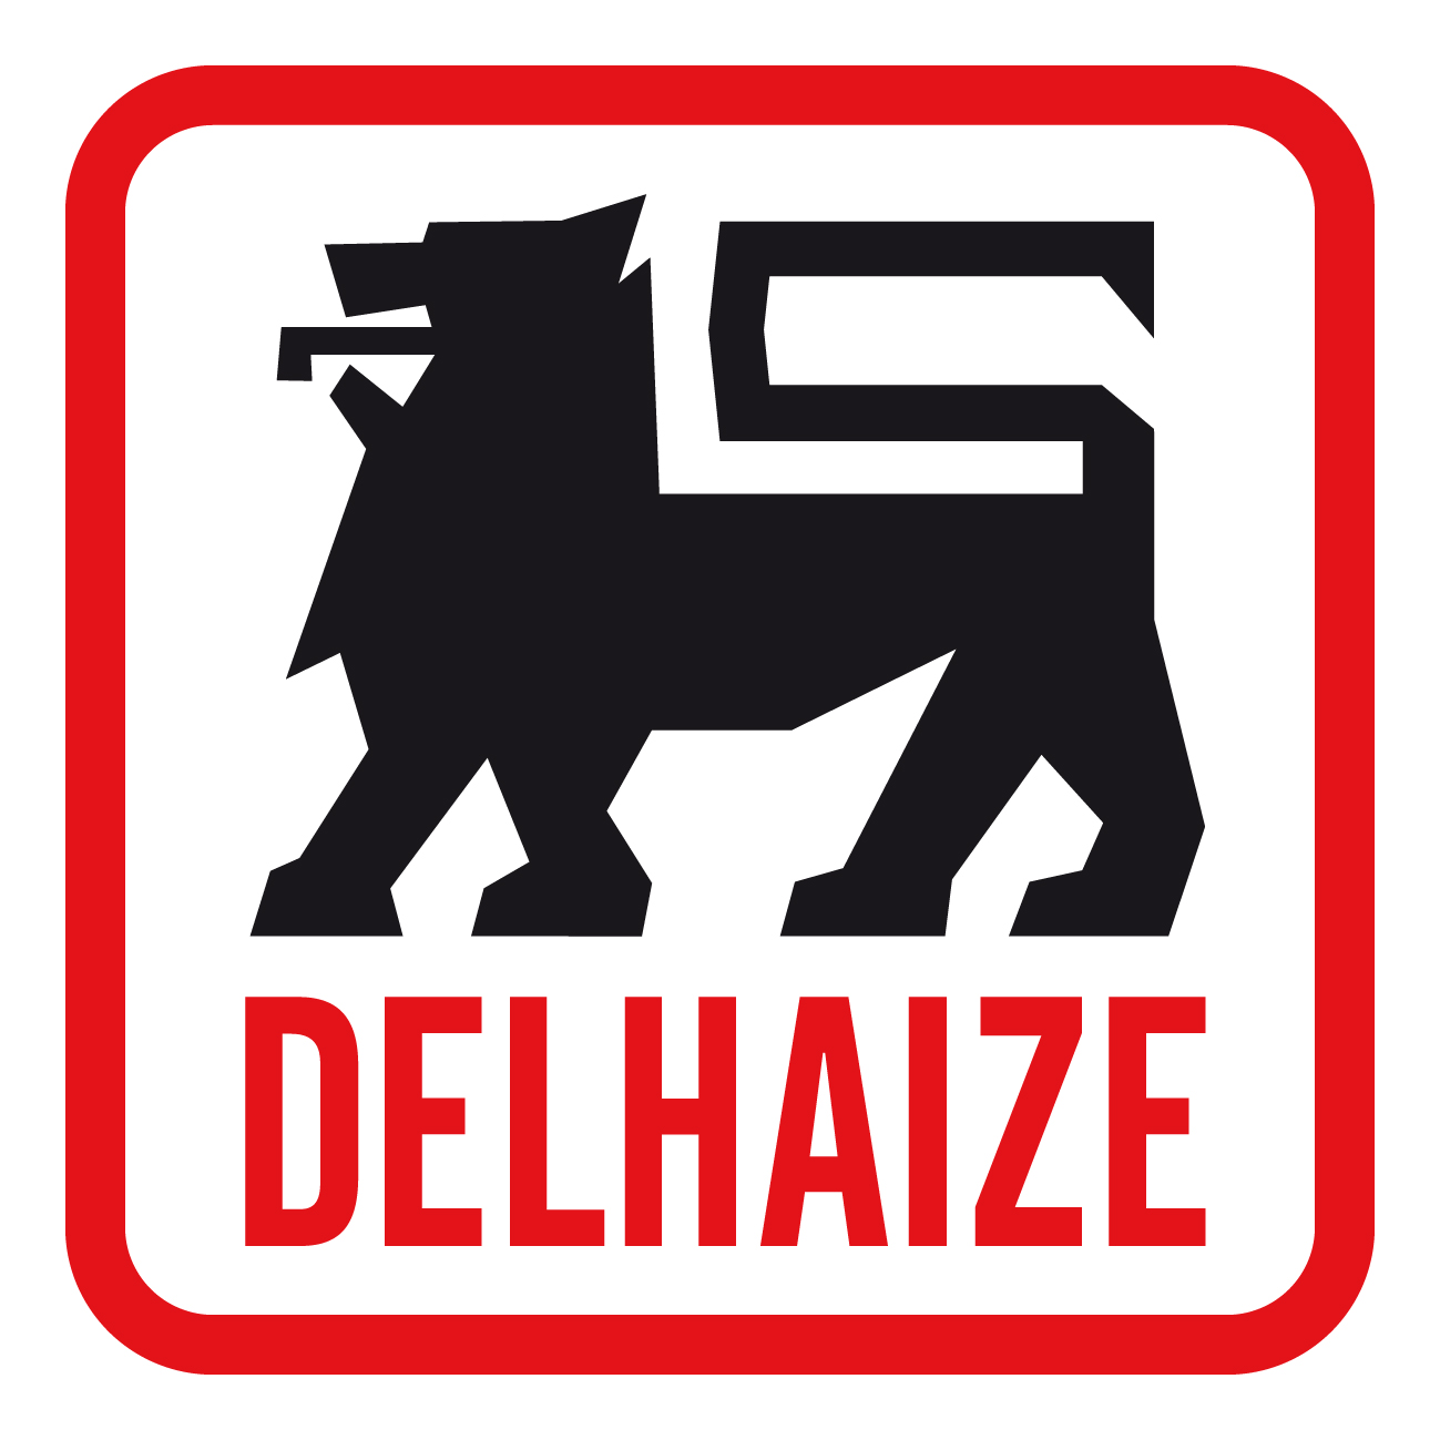 Delhaize annonce la reprise d’une deuxième série de 17 supermarchés en gestion propre par des exploitants indépendants 